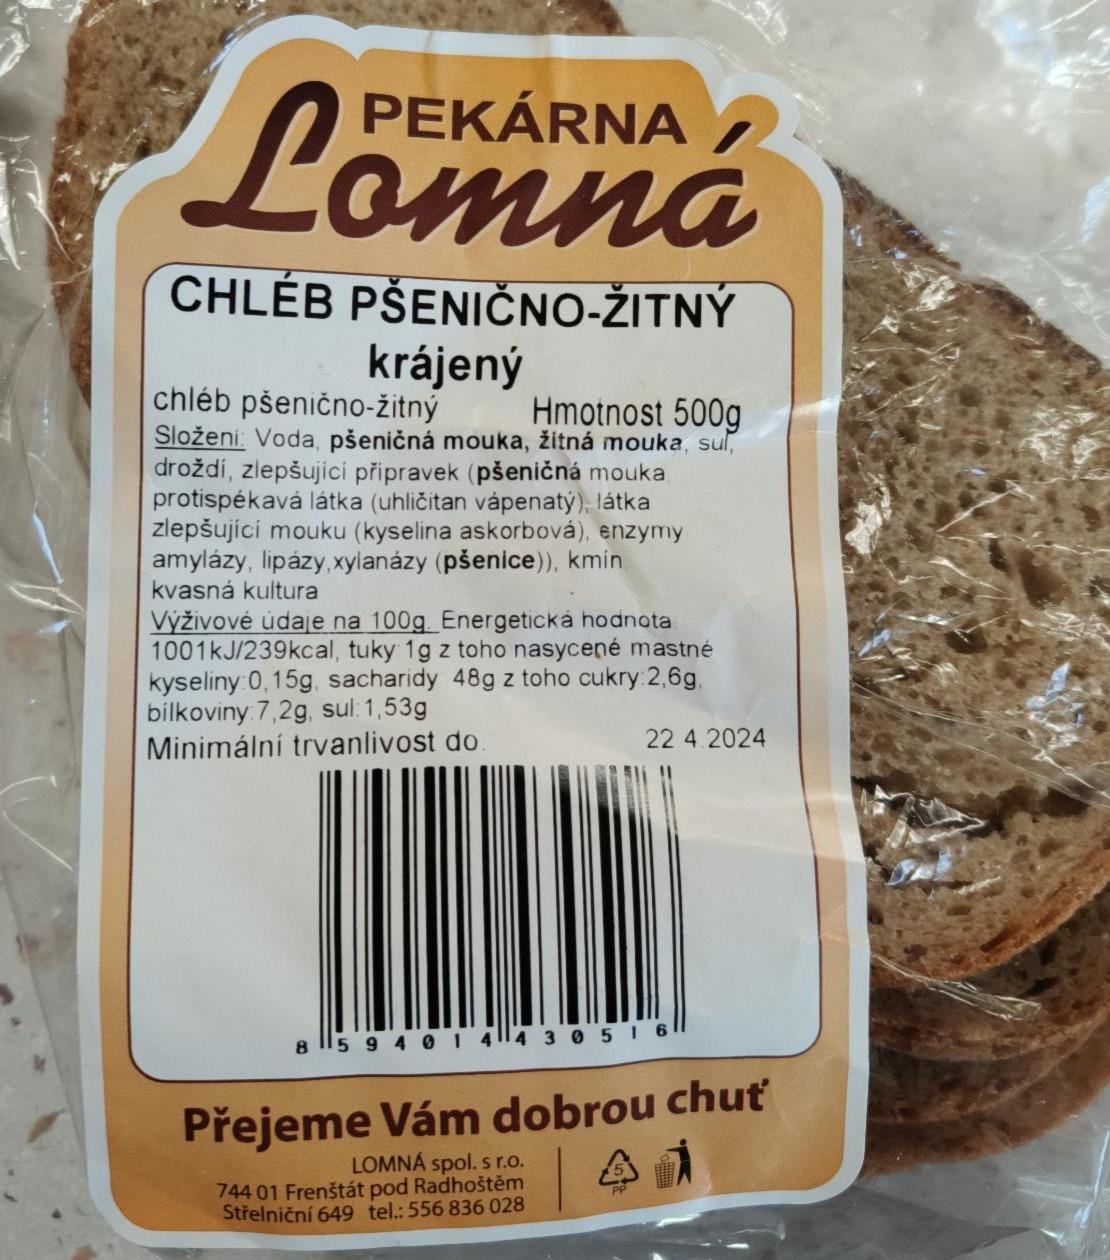 Fotografie - Chléb pšenično-žitný Pekárna Lomná